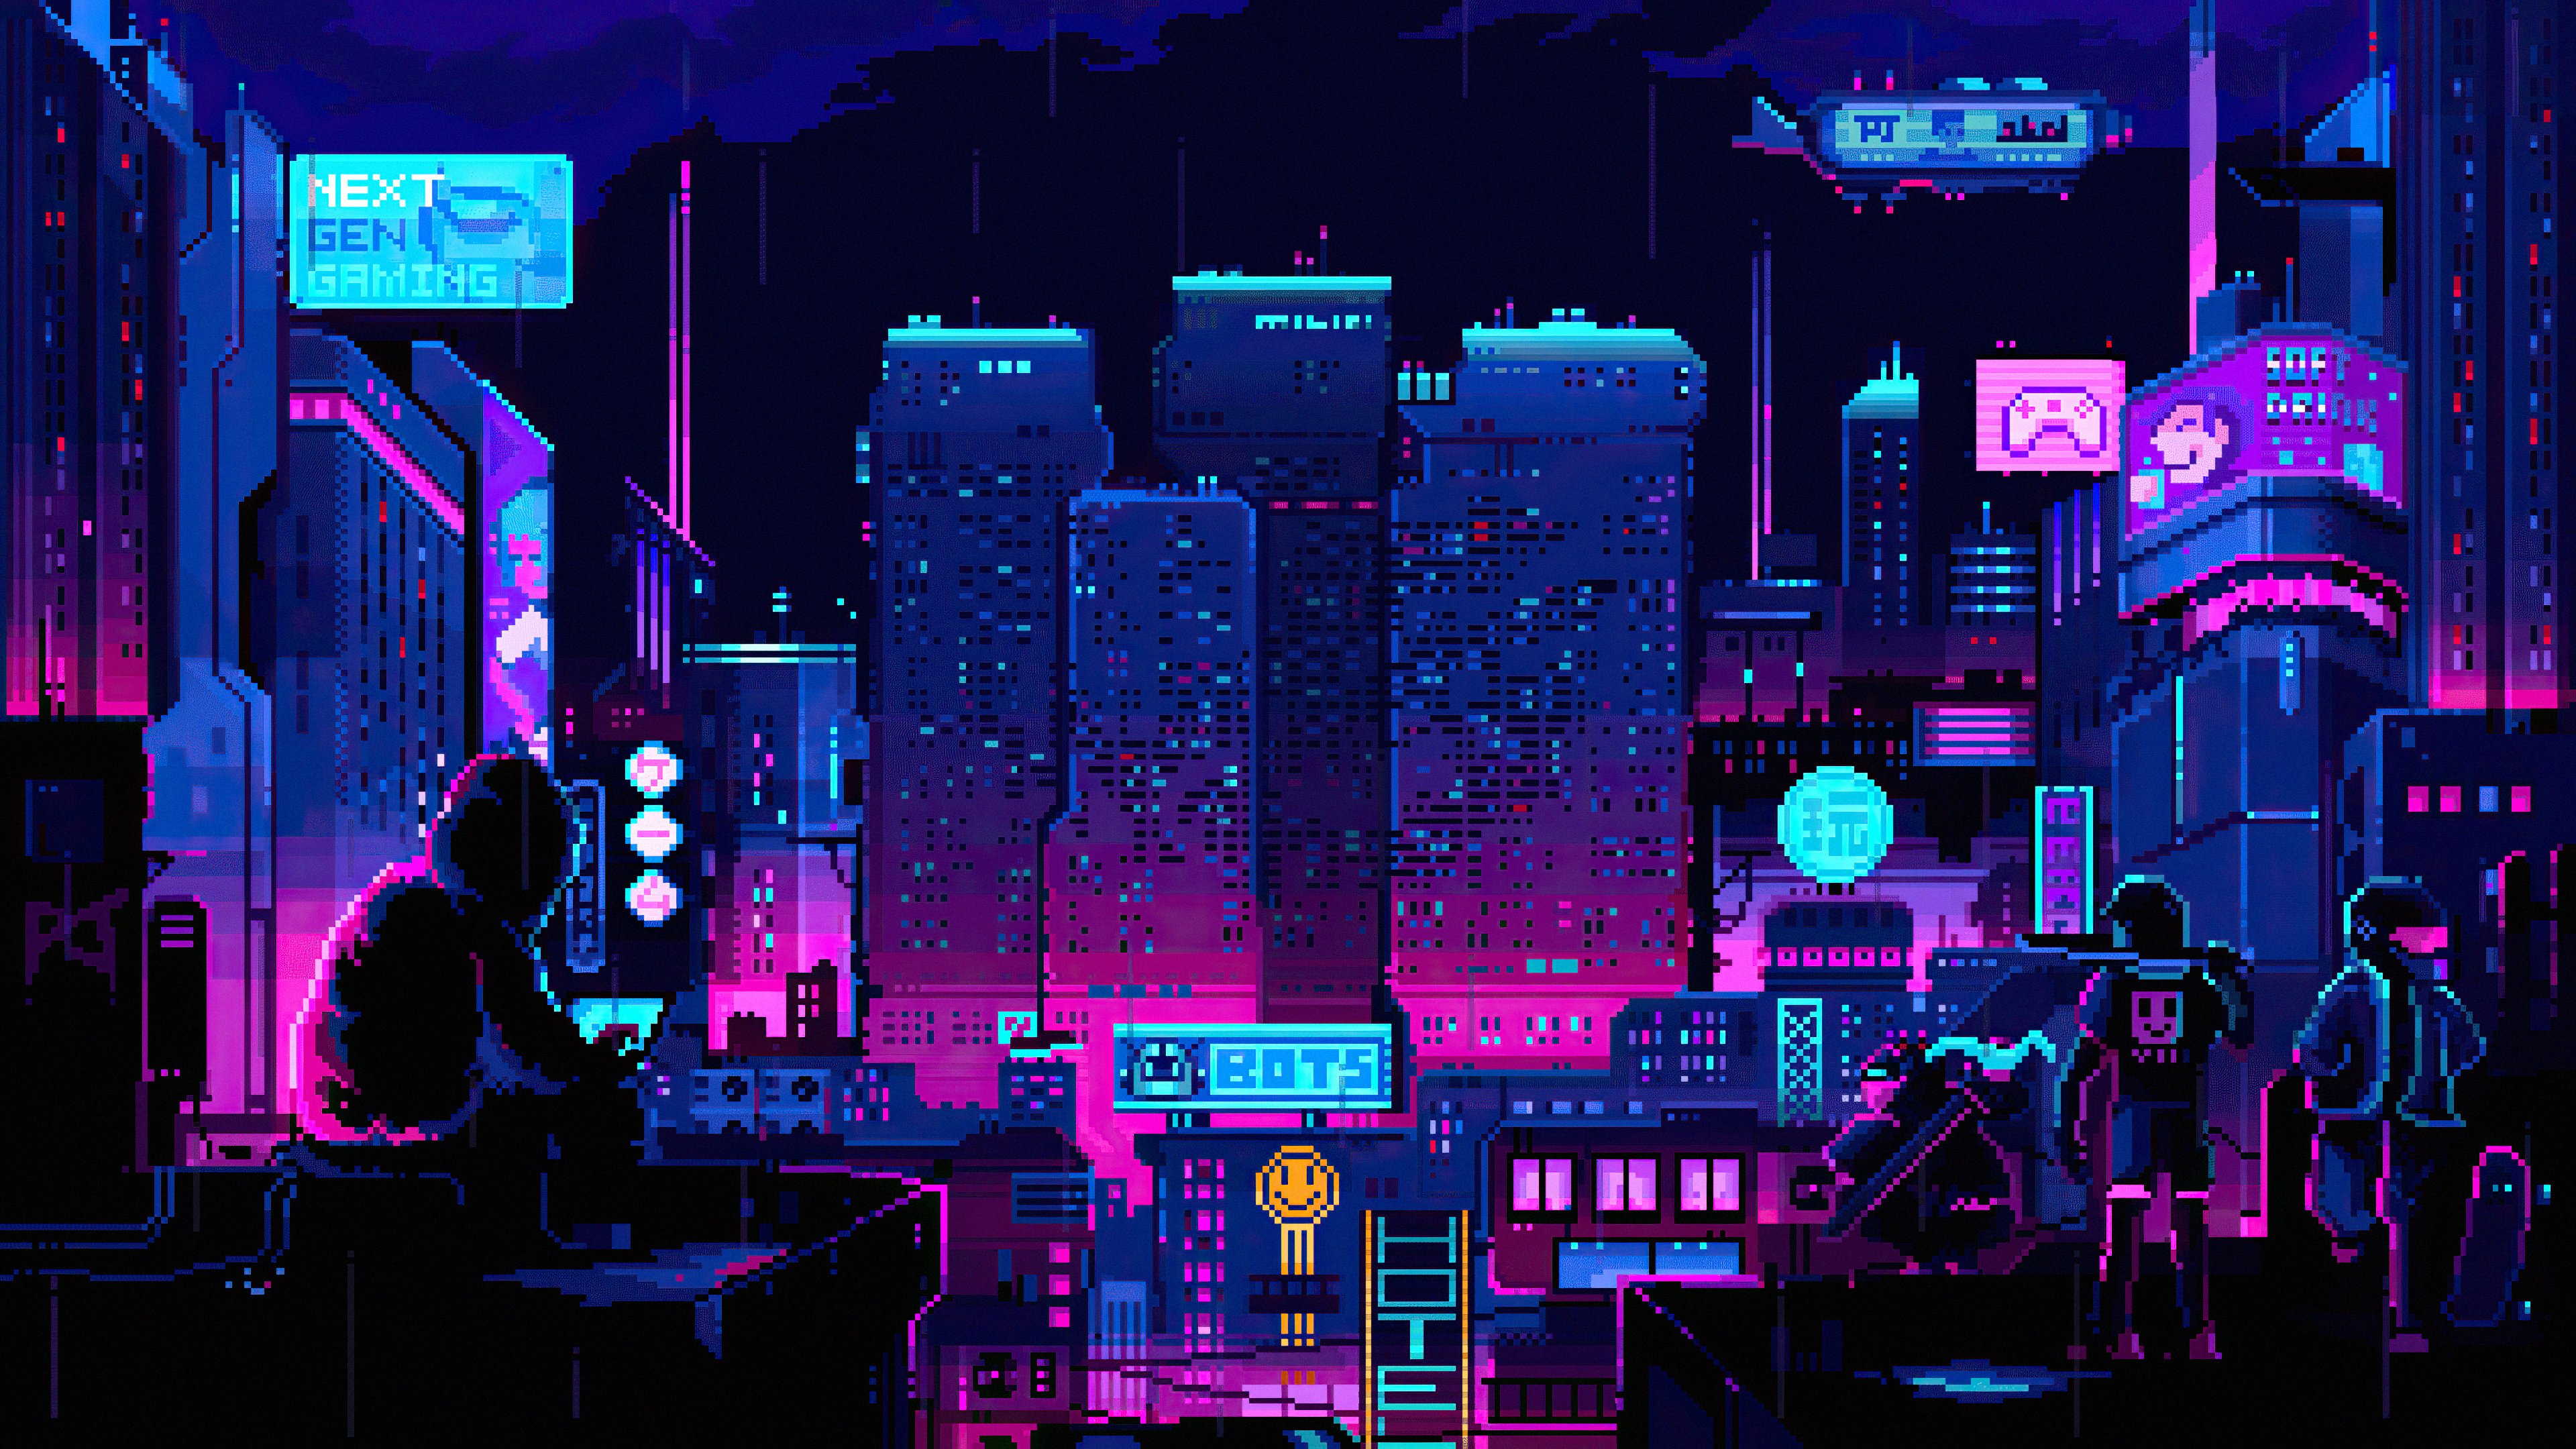 Экран 8 бит. Pixel Cyberpunk ASUS ROG. Синтвейв ретровейв. Пиксельный киберпанк город / Pixel Cyberpunk City. Пиксель арт Cyberpunk 2077.